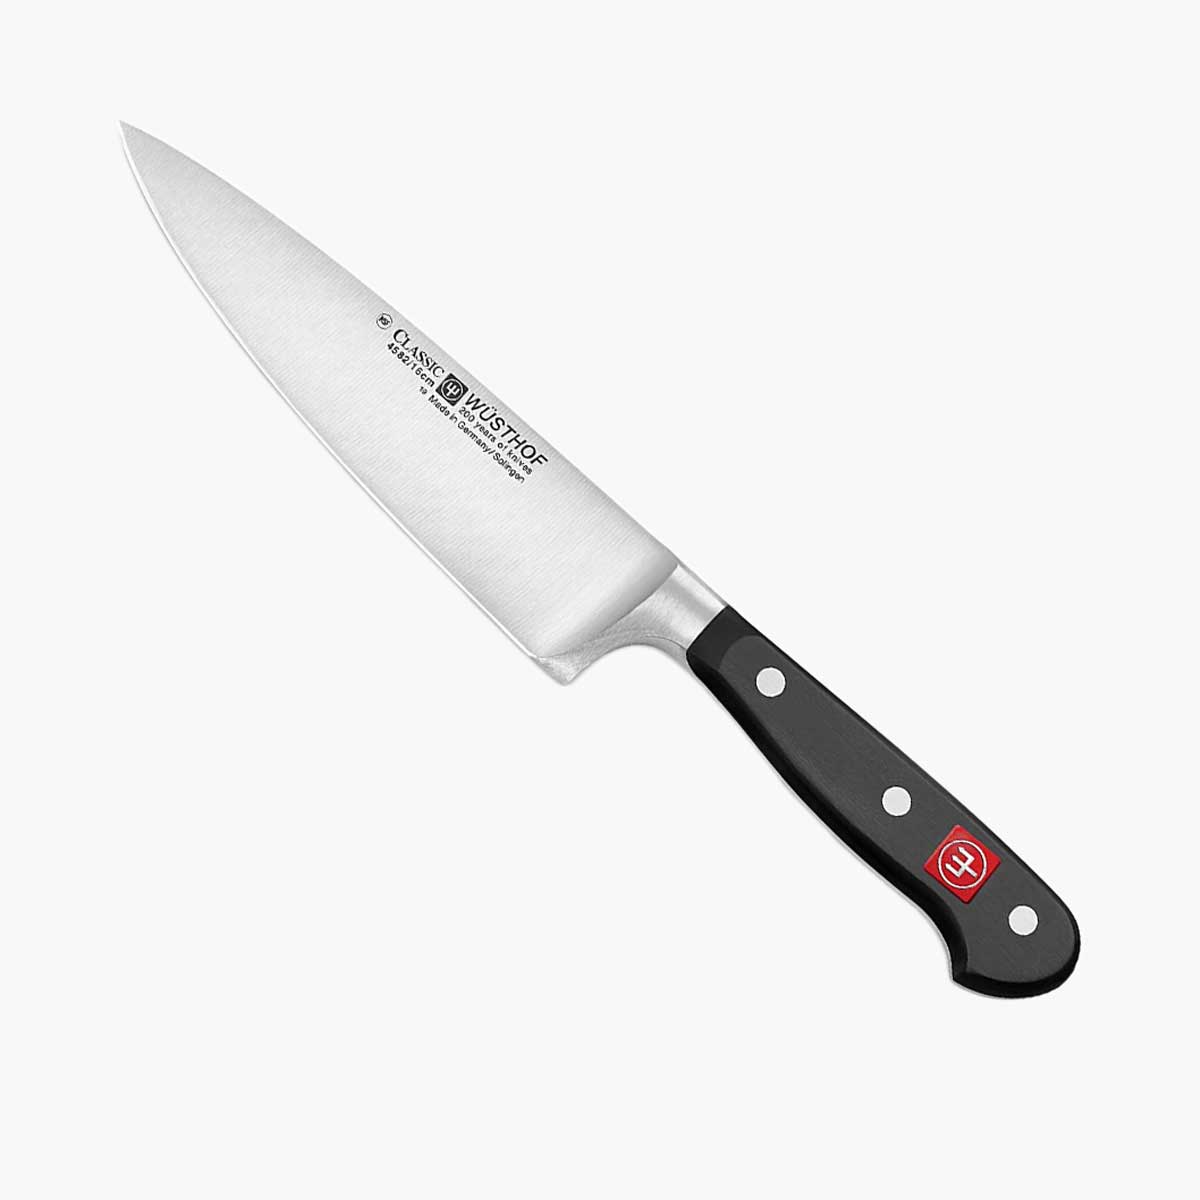 Wusthof Chef Knife